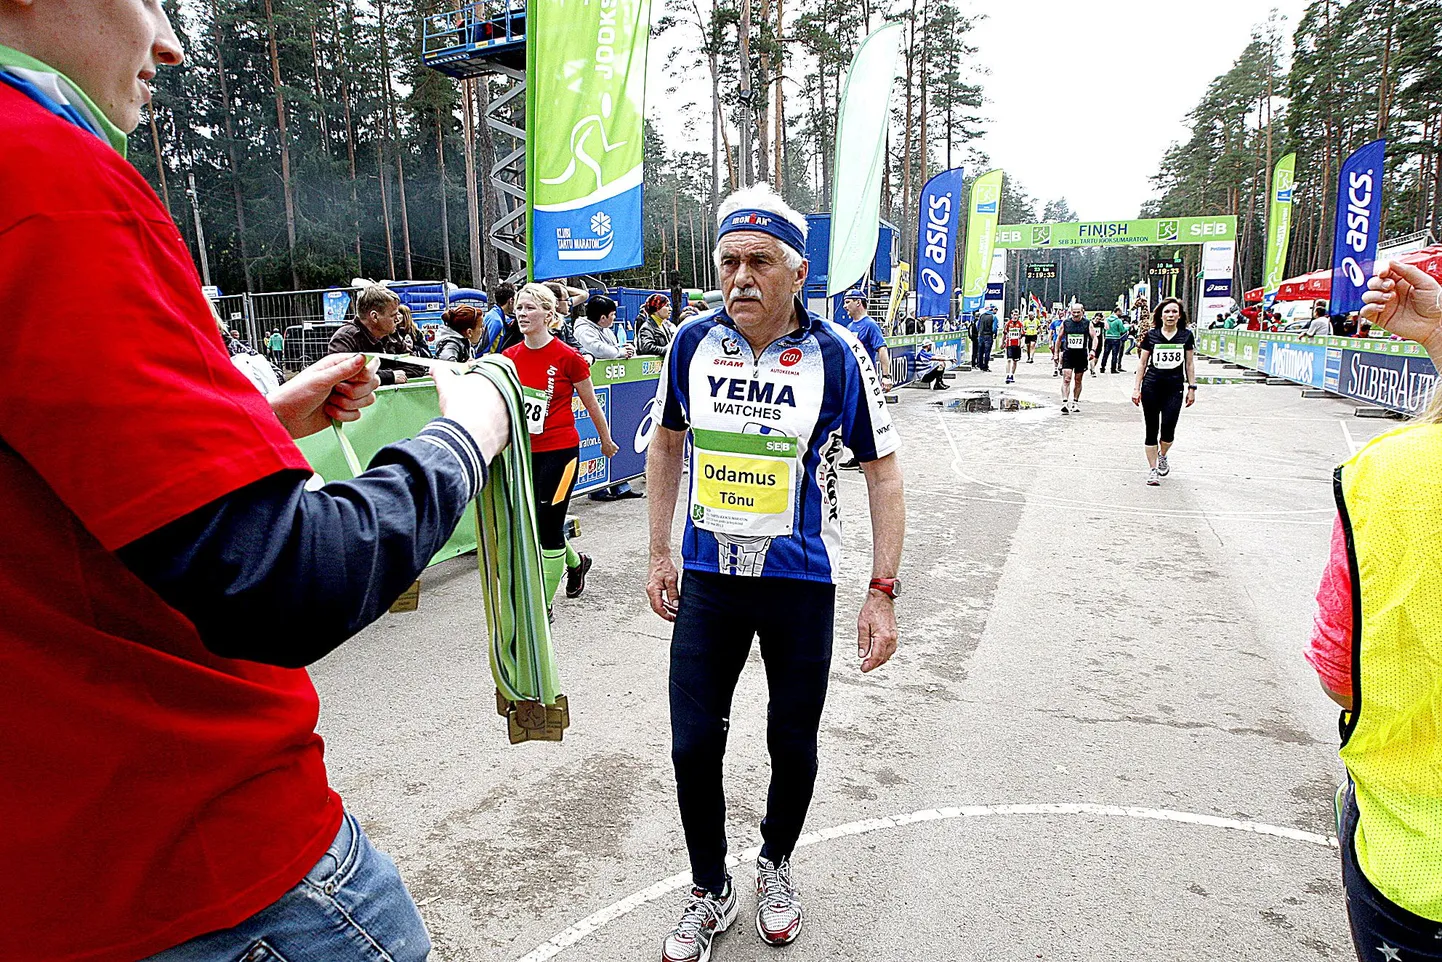 Tehtud! 31 Tartu jooksumaratoni on Tõnu Odamusel seljataga ja finišis võib ta osalejamedali uhkusega vastu võtta.